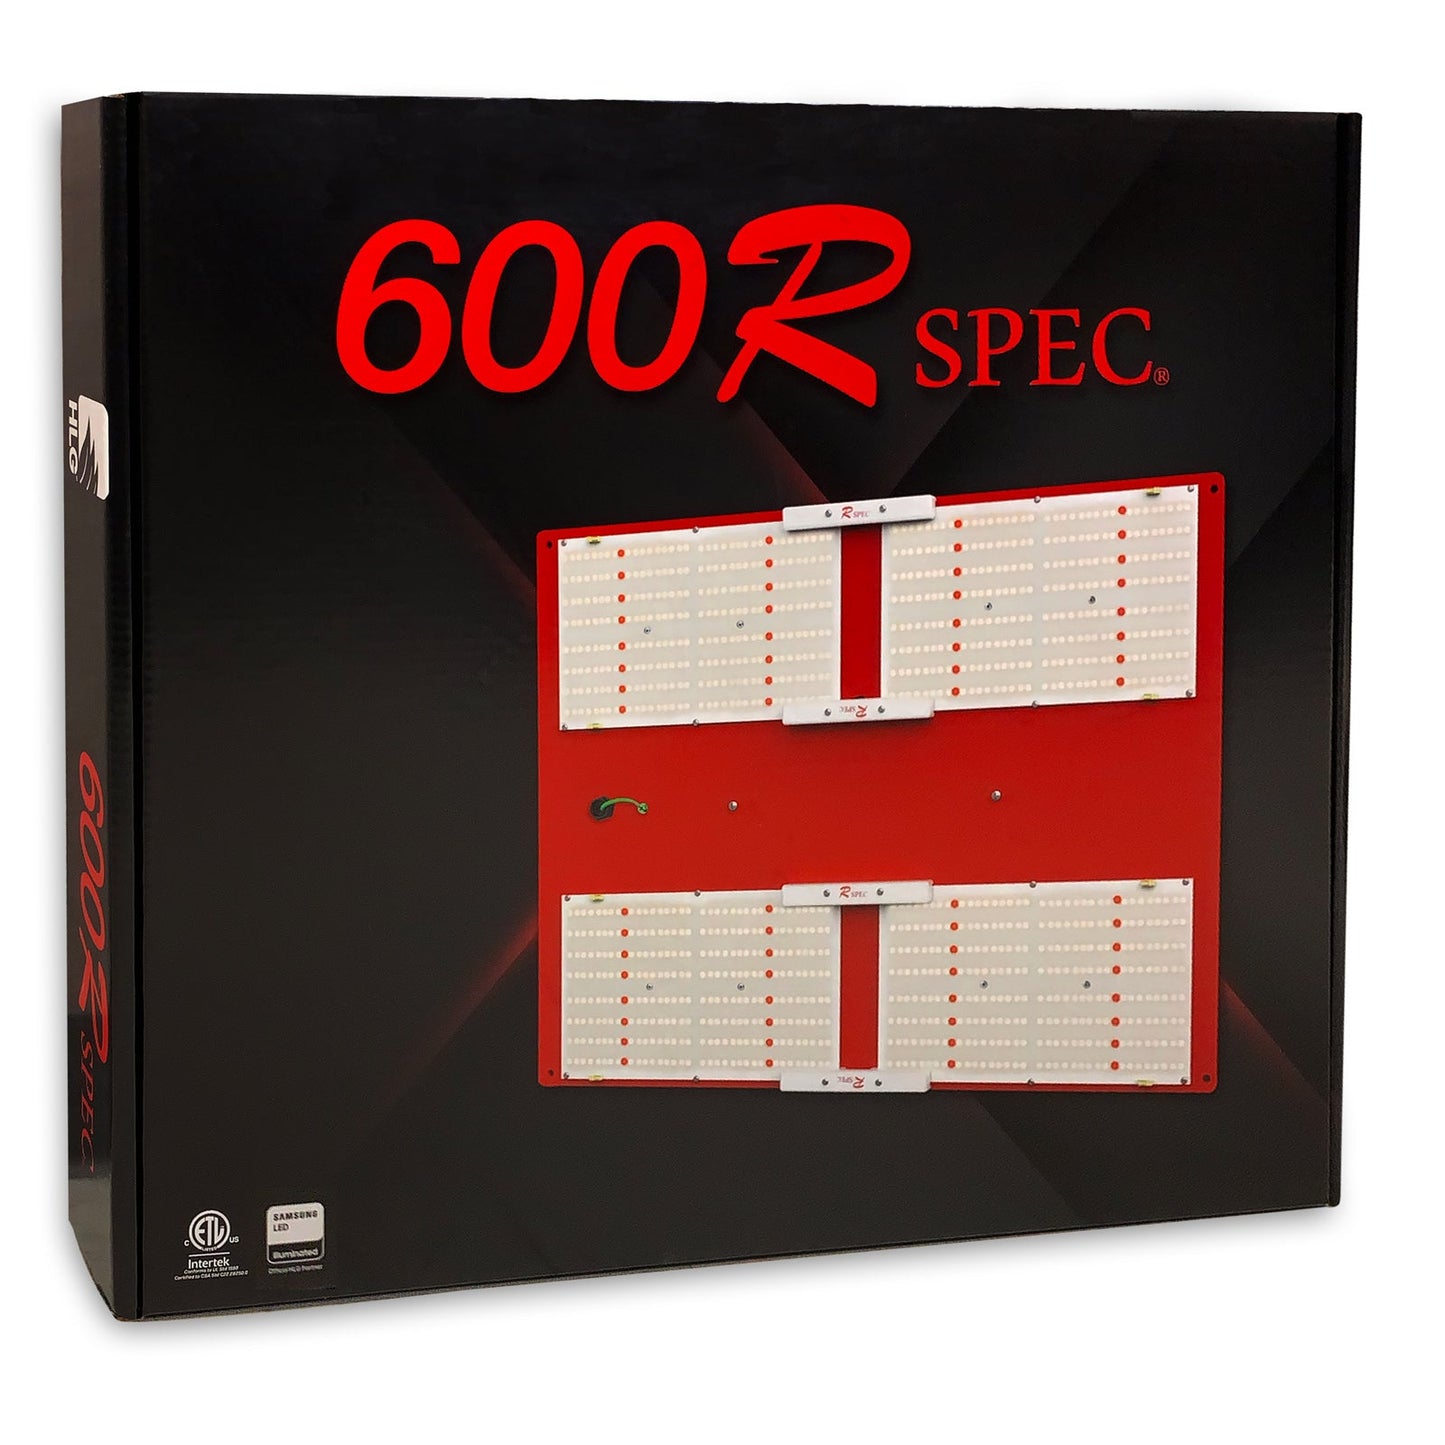 HLG 600 Rspec®